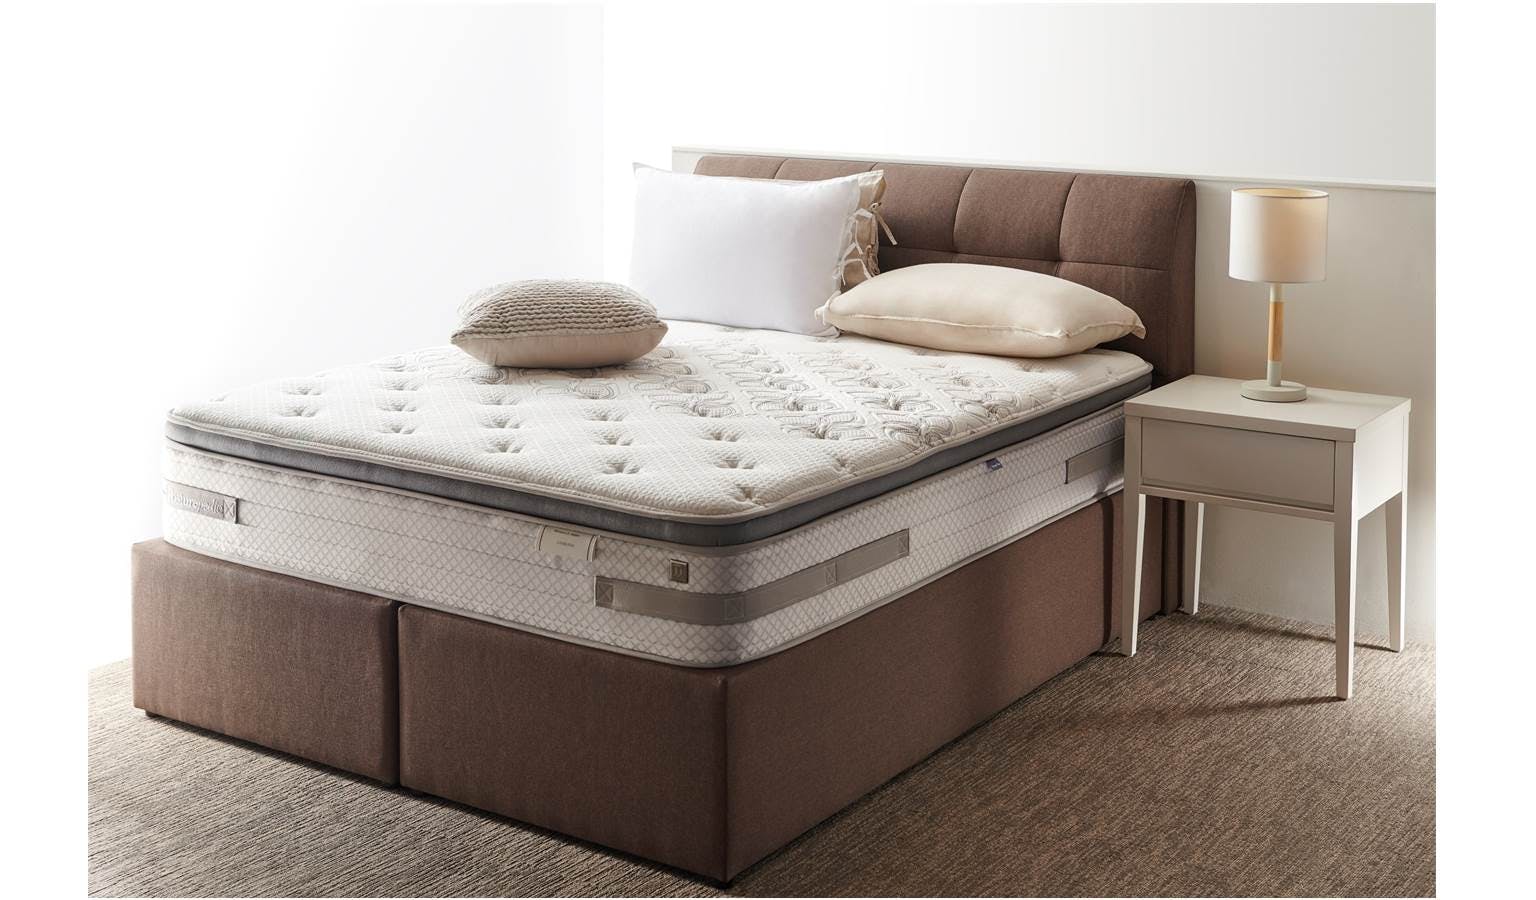 bed mattress sale canberra